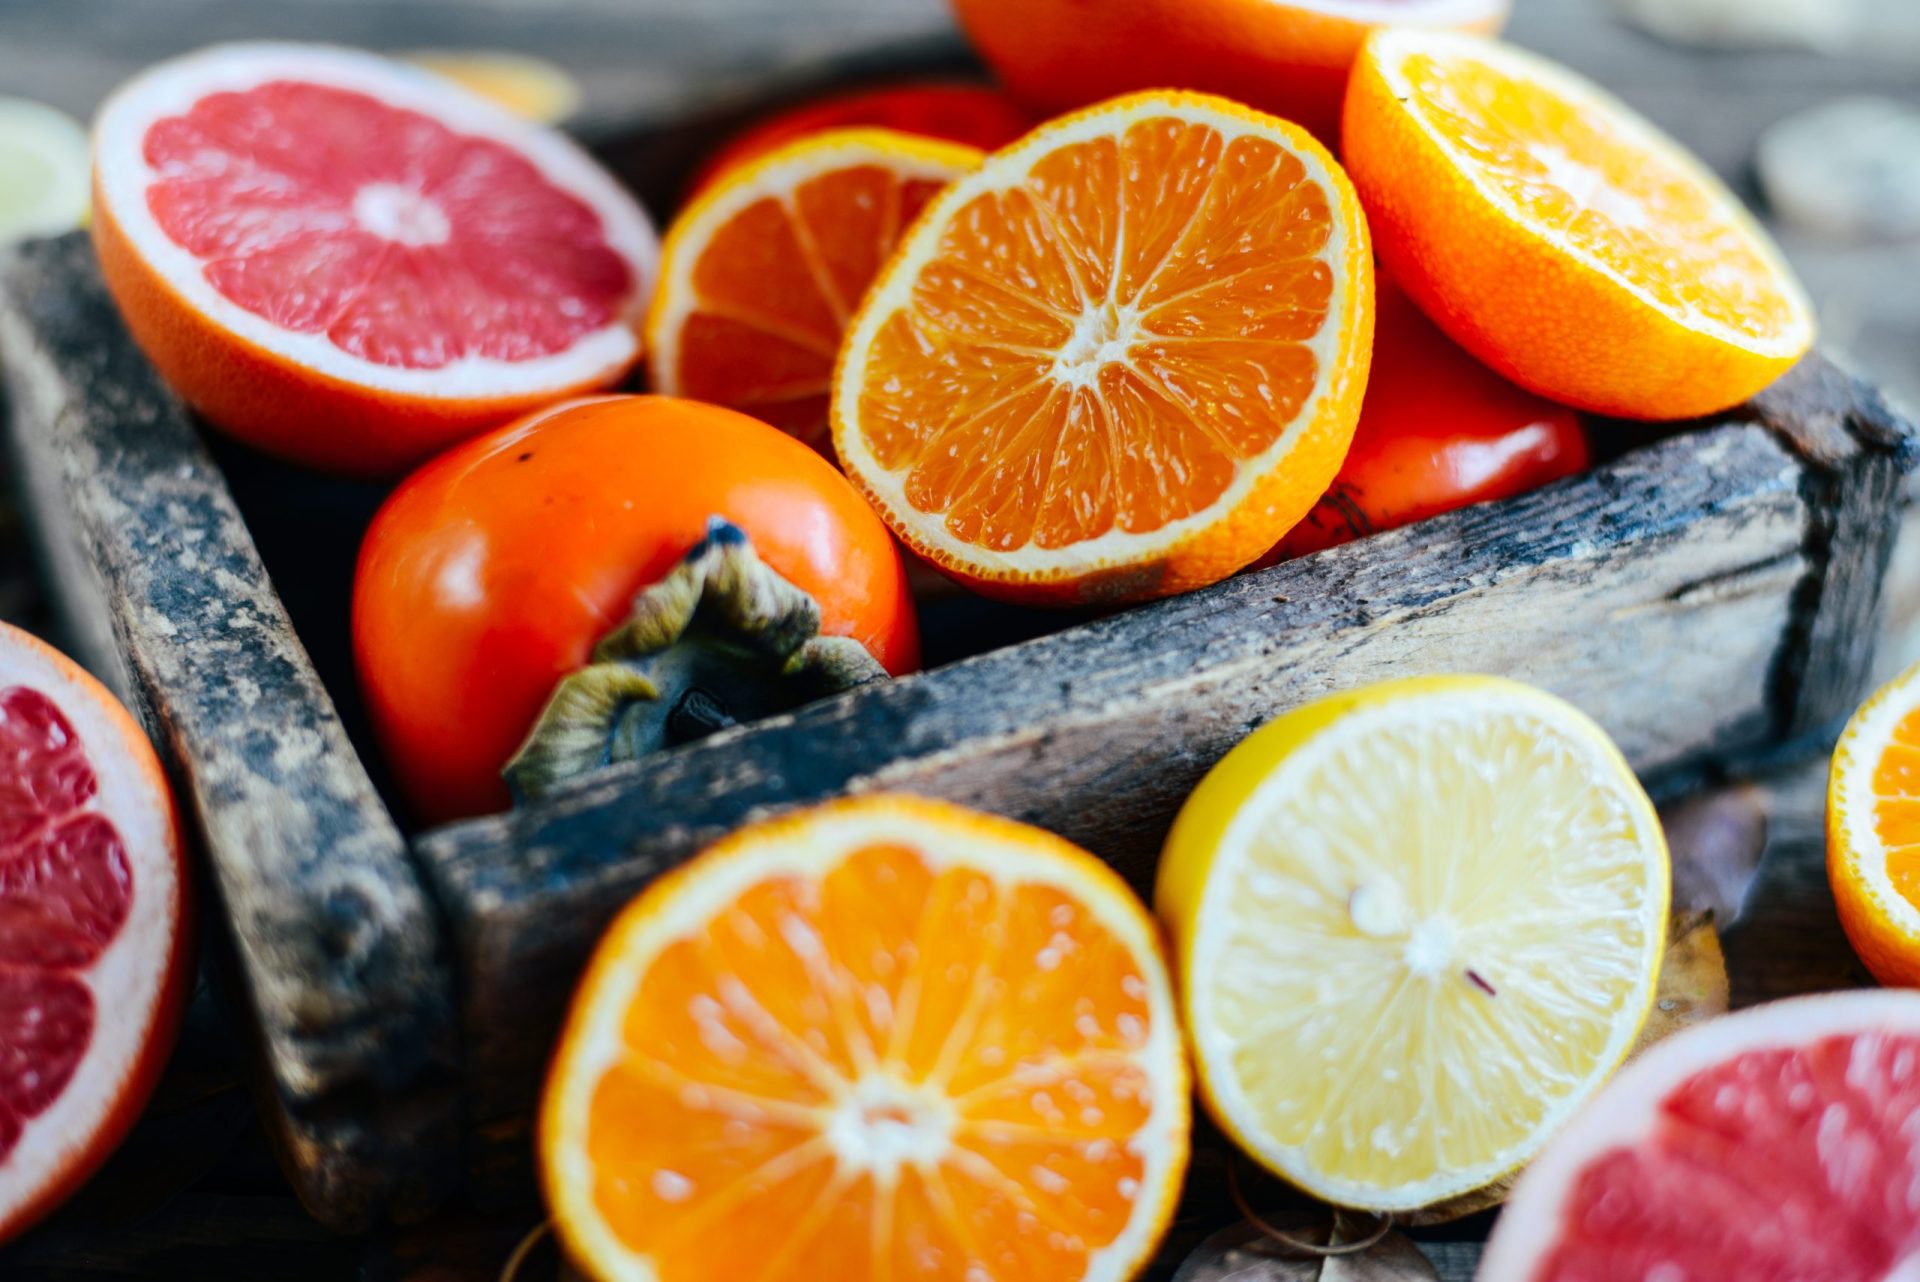 Saúde. Comer um citrino por dia pode ajuda a reduzir risco de demência